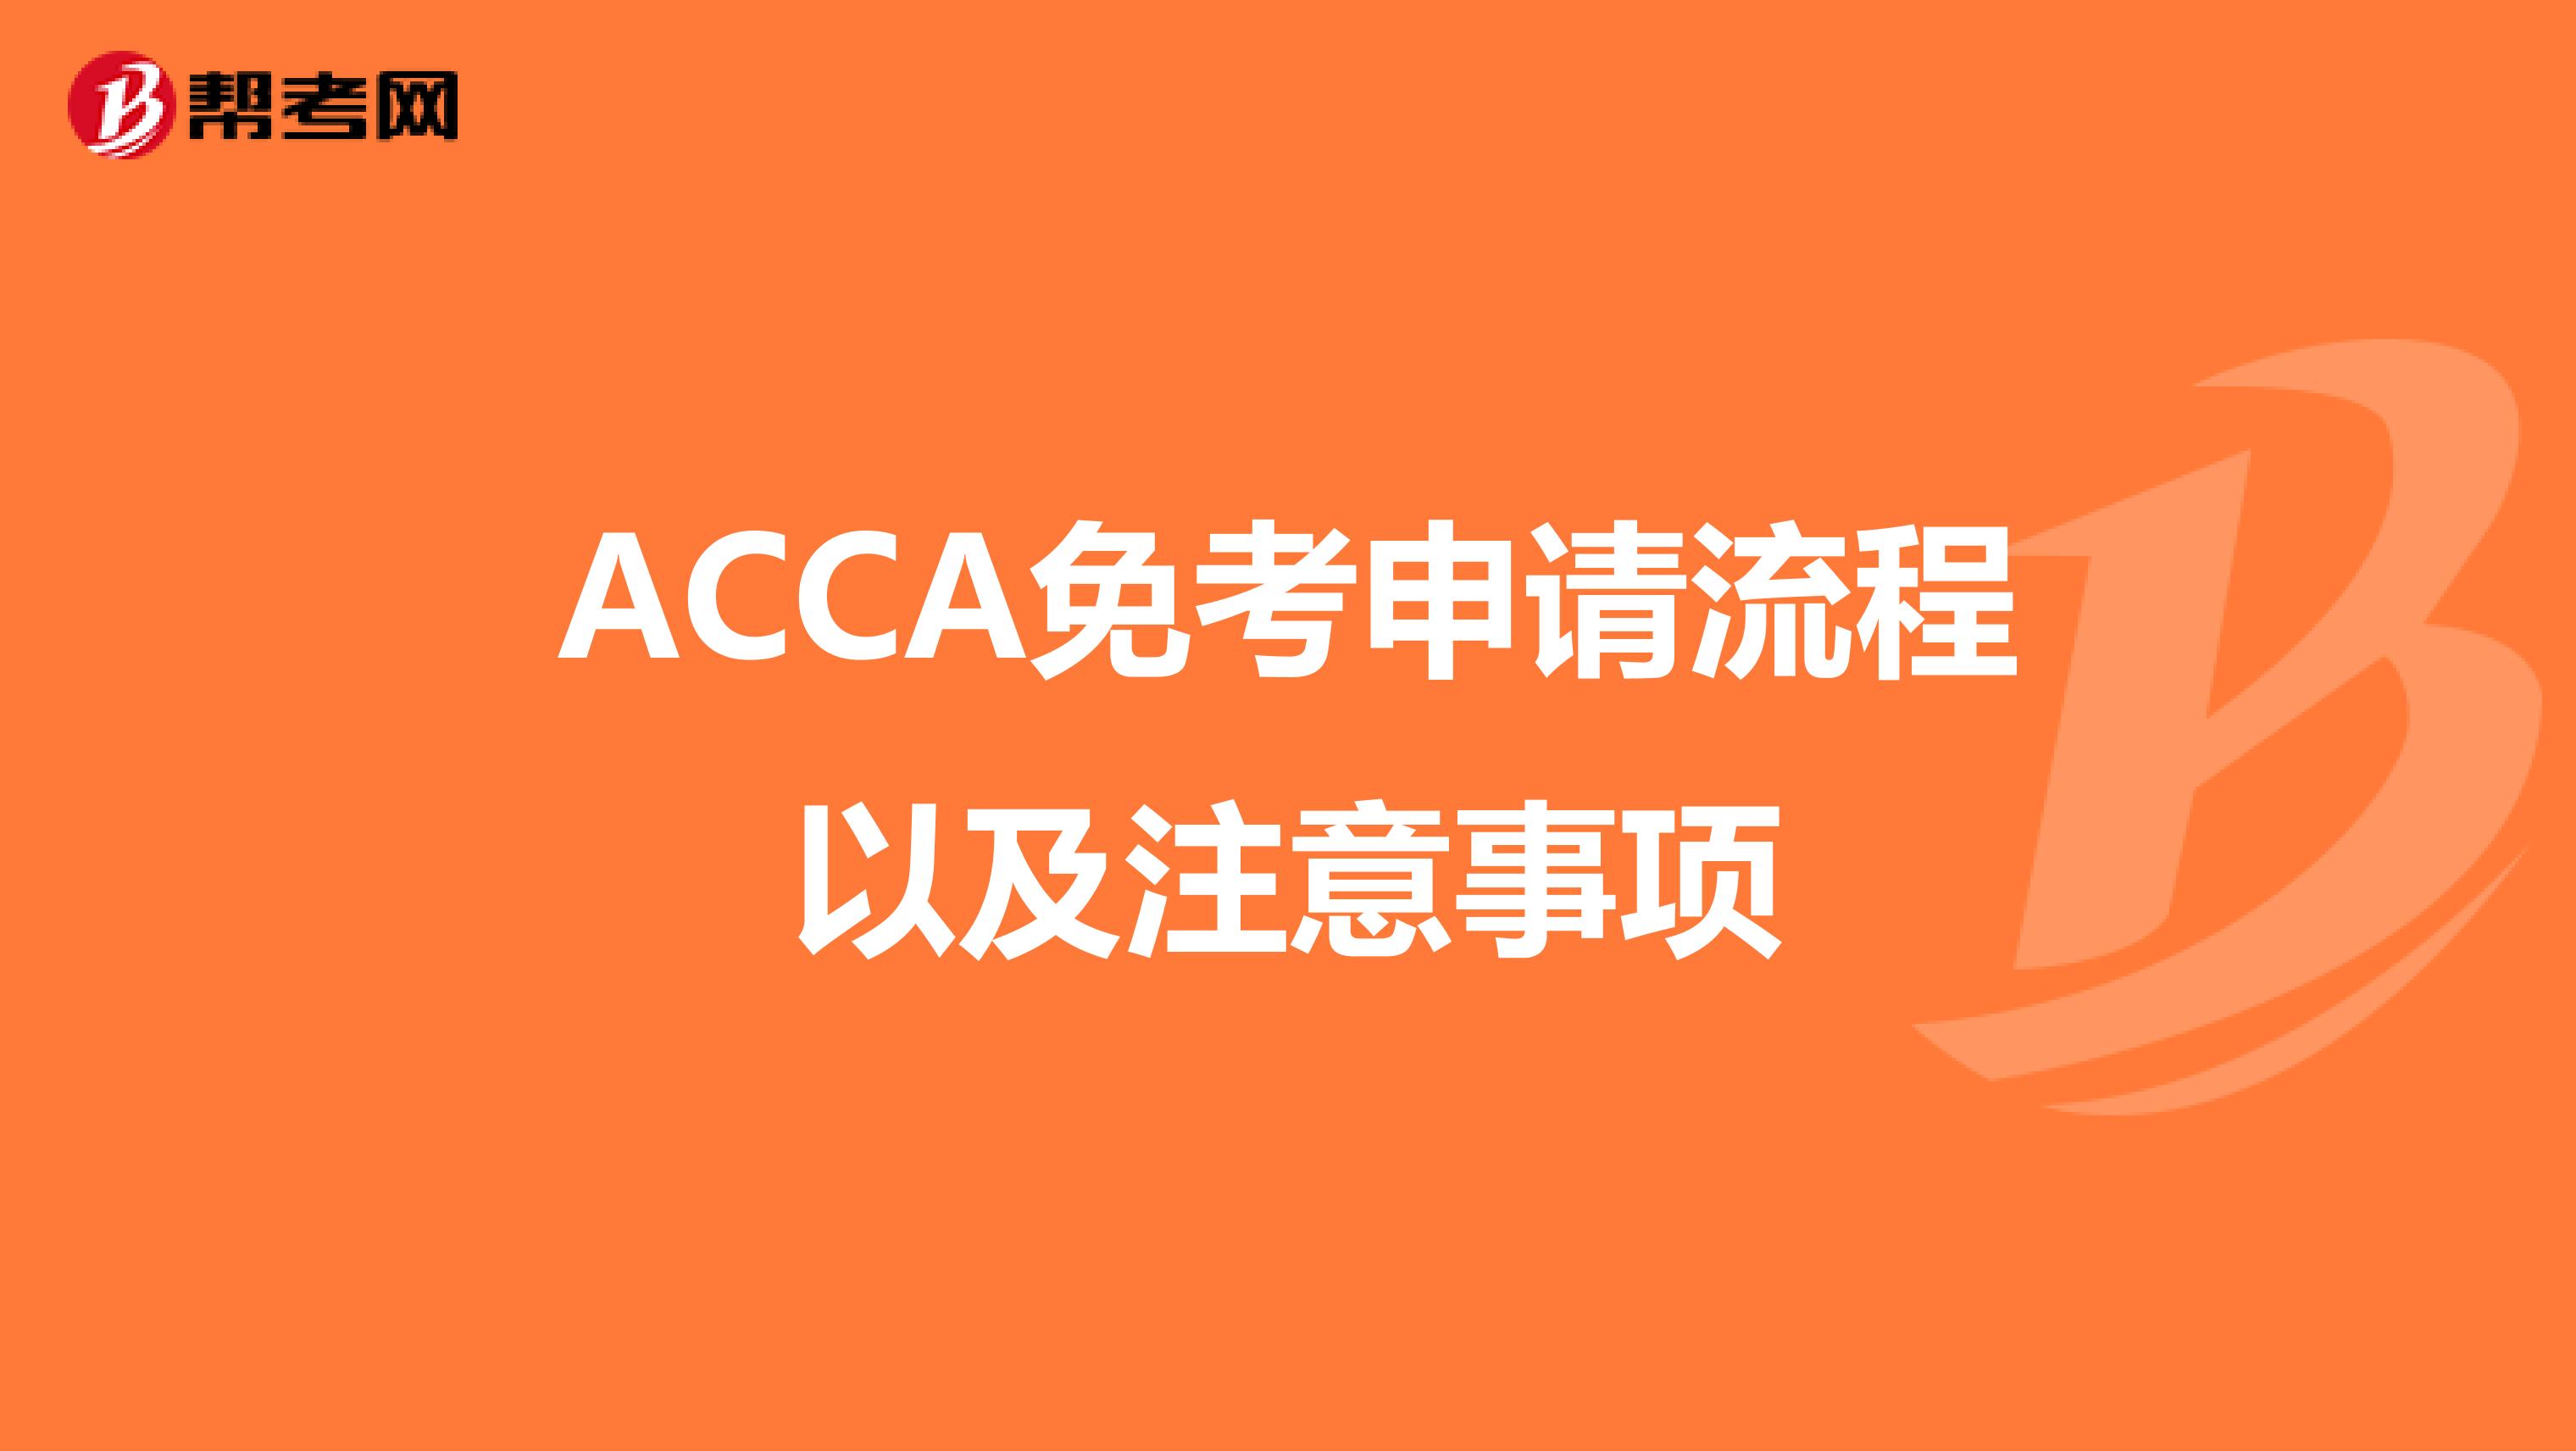 ACCA免考申请流程以及注意事项